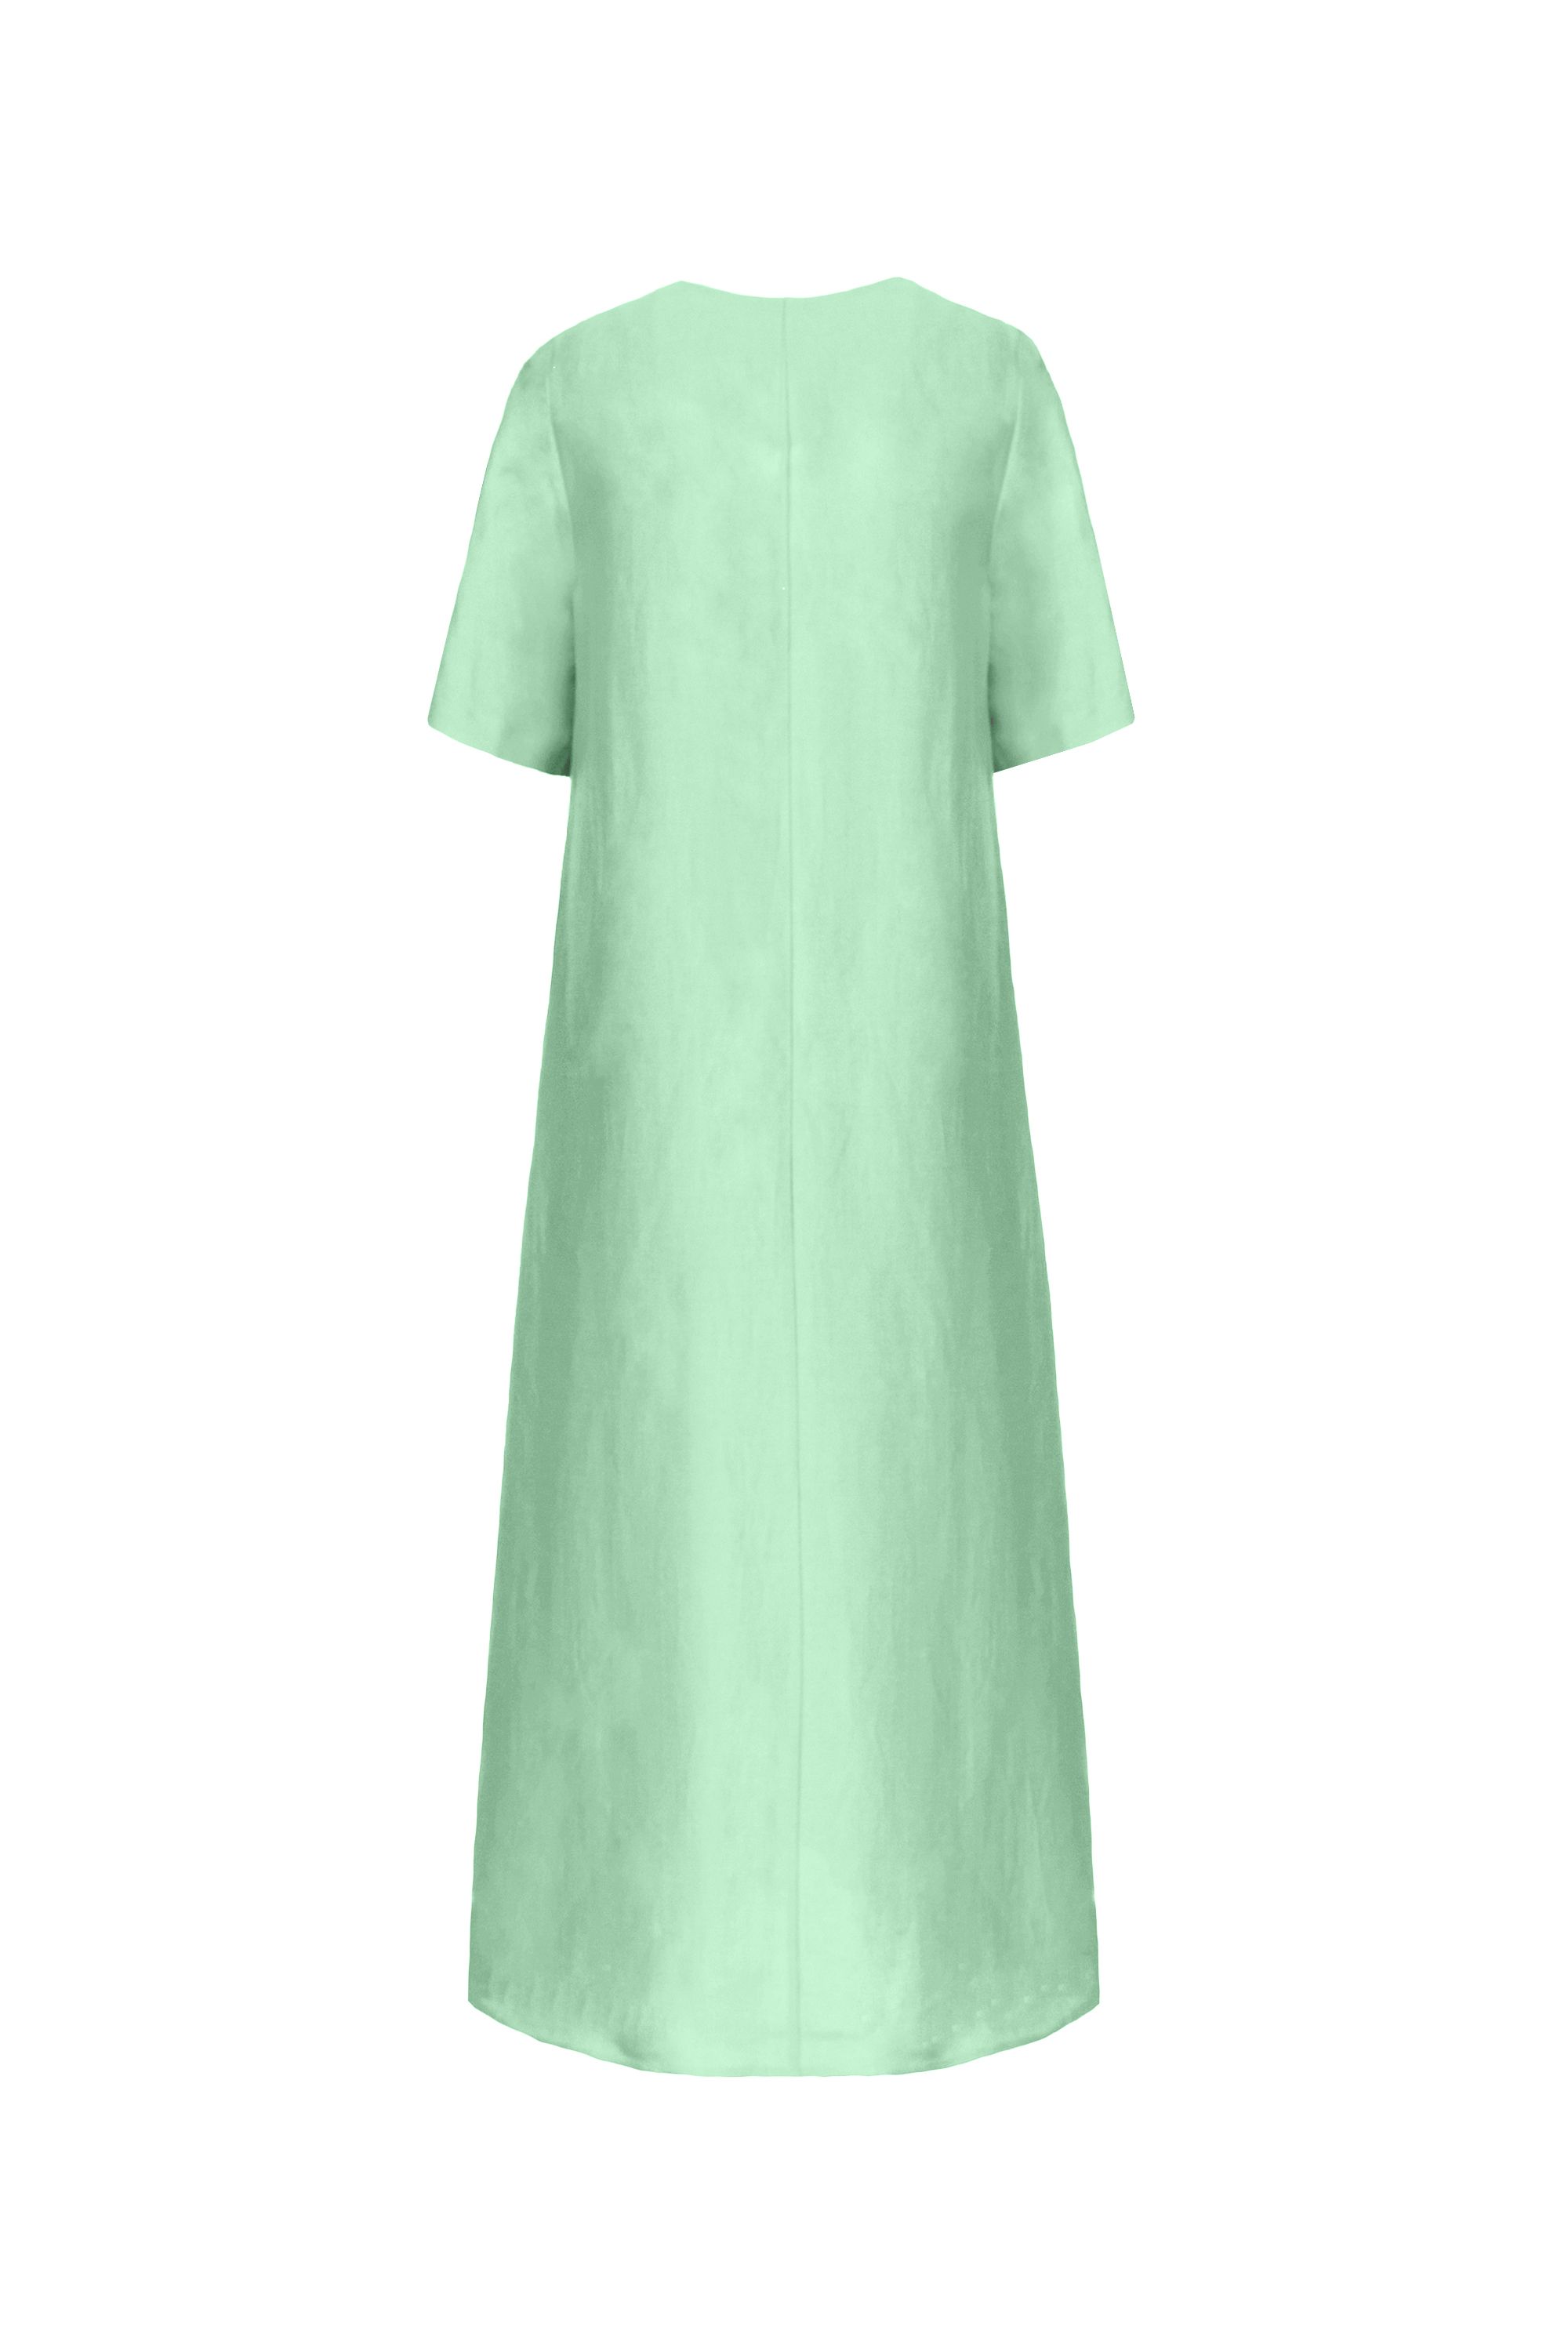 Платье женское 5К-13086-1